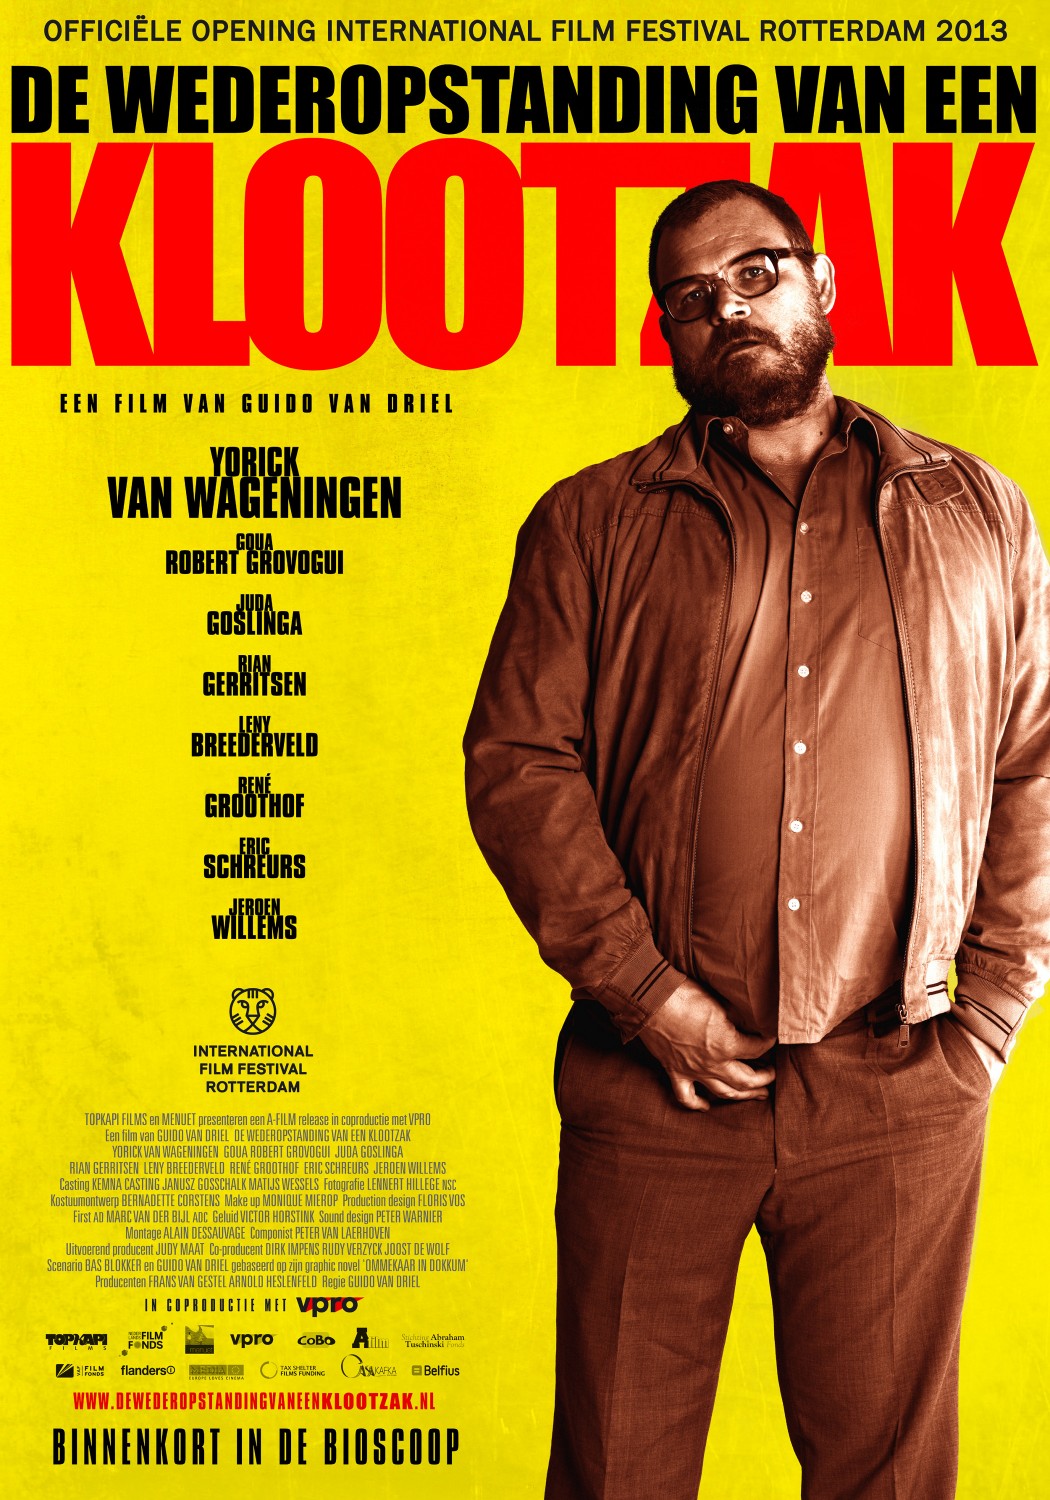 Extra Large Movie Poster Image for De Wederopstanding van een Klootzak 